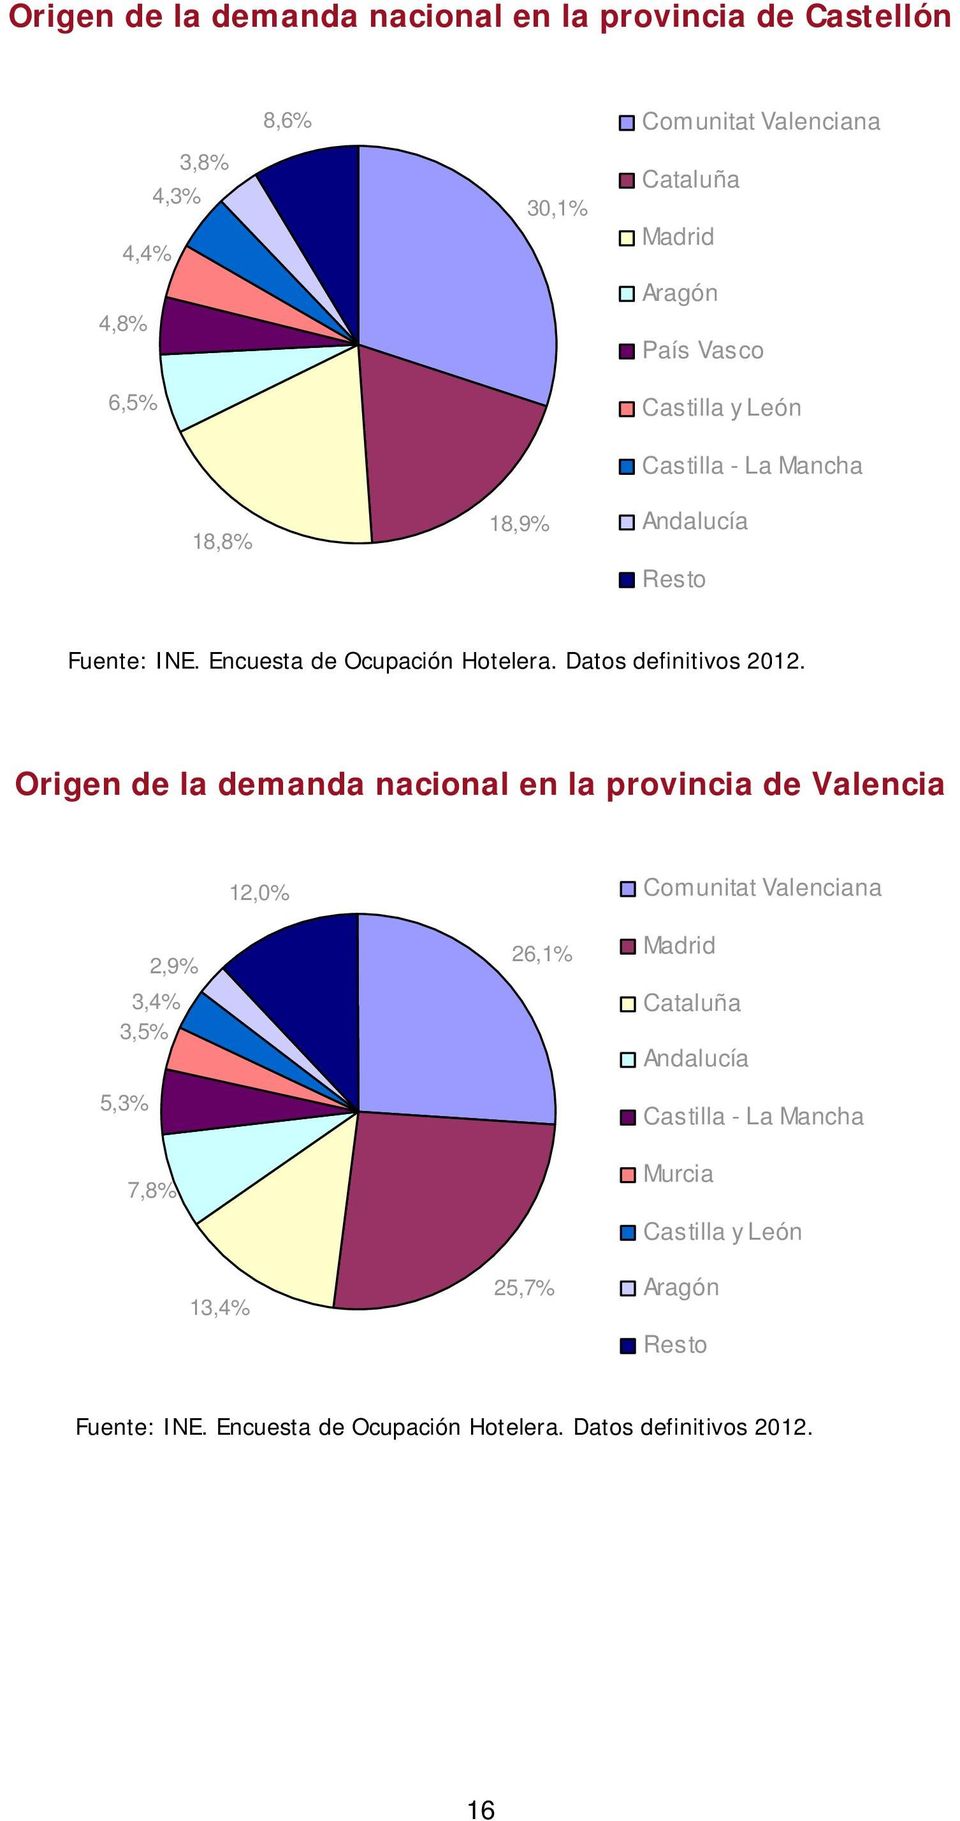 Andalucía Origen de la demanda nacional en la provincia de Valencia 12,0% Comunitat Valenciana 3,4%